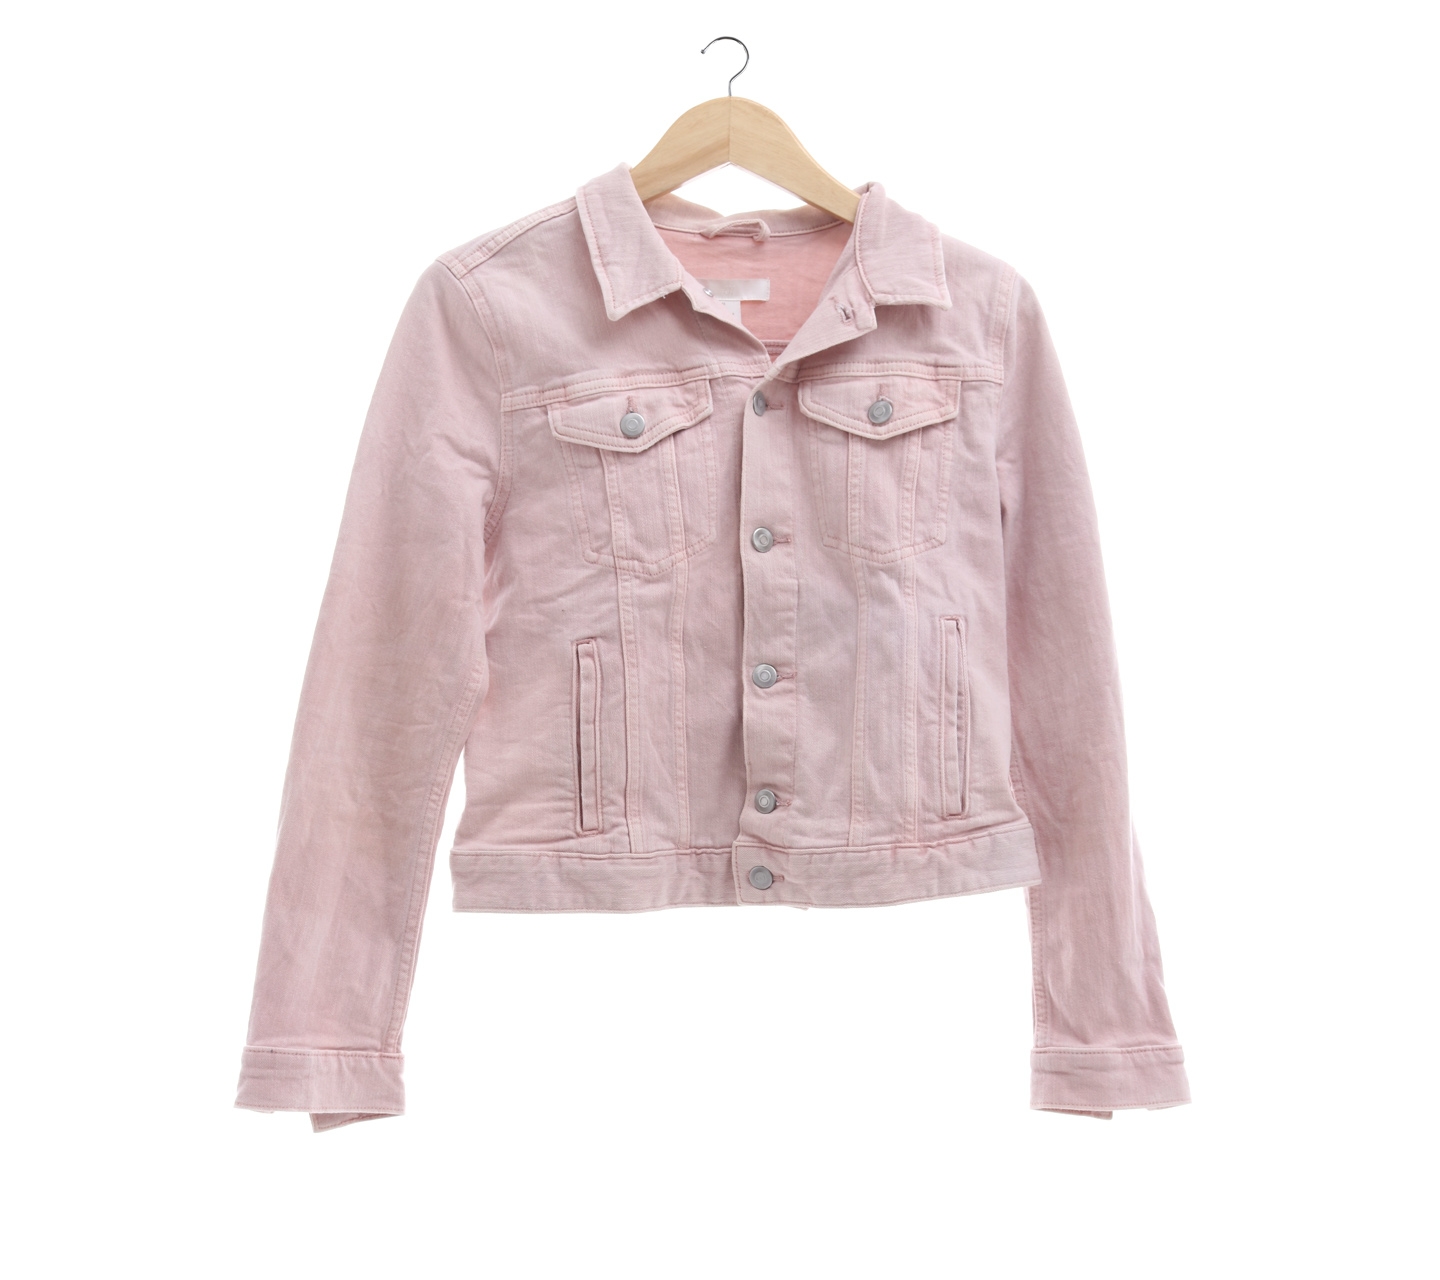 H&M Pink Jacket